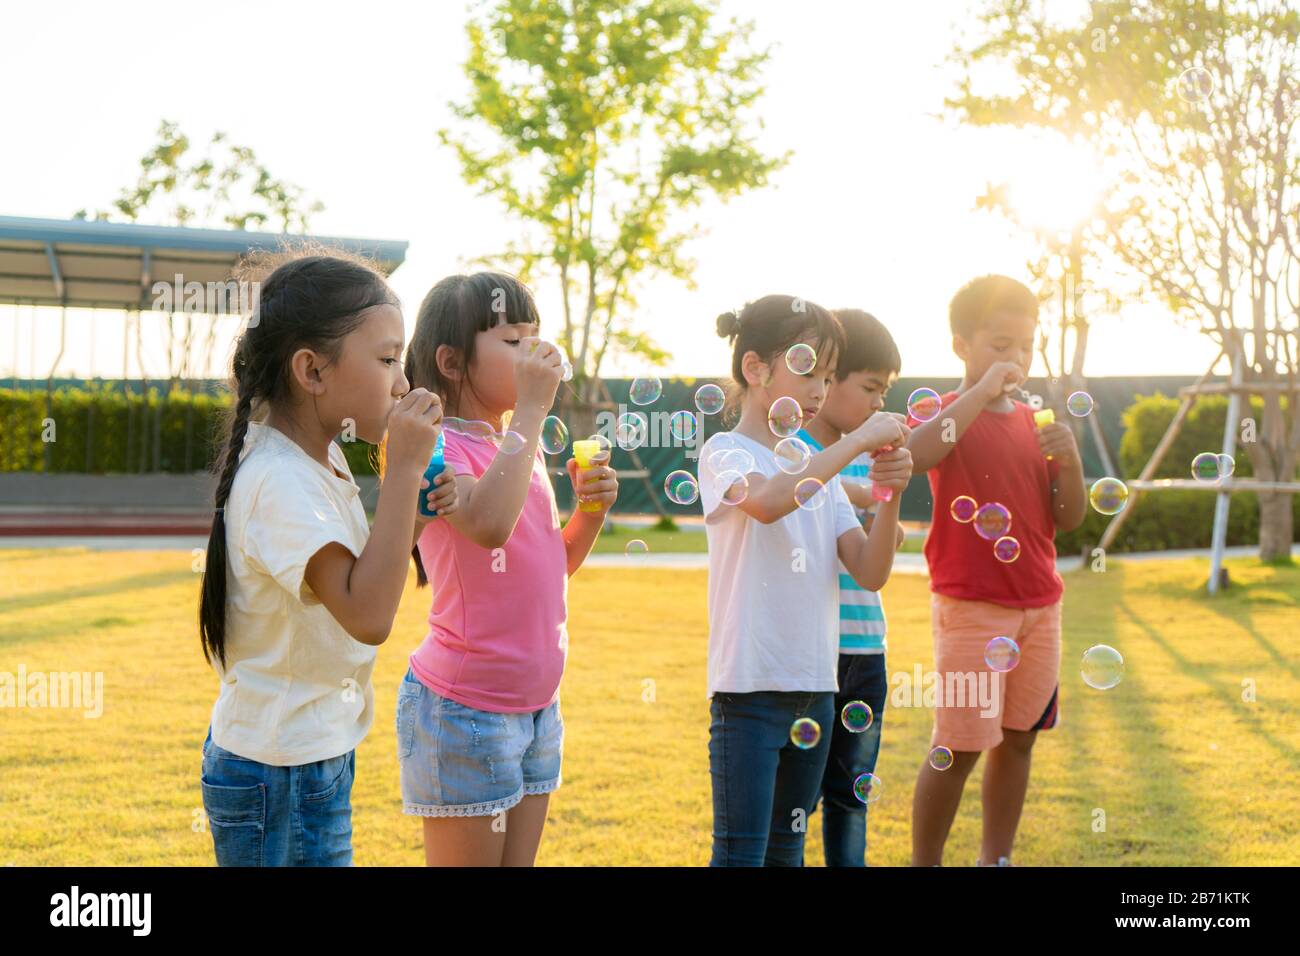 Un grand groupe d'heureux amis asiatiques souriants de maternelle gamins jouant des bulles de souffle ensemble dans le parc sur l'herbe verte le jour ensoleillé d'été. Banque D'Images